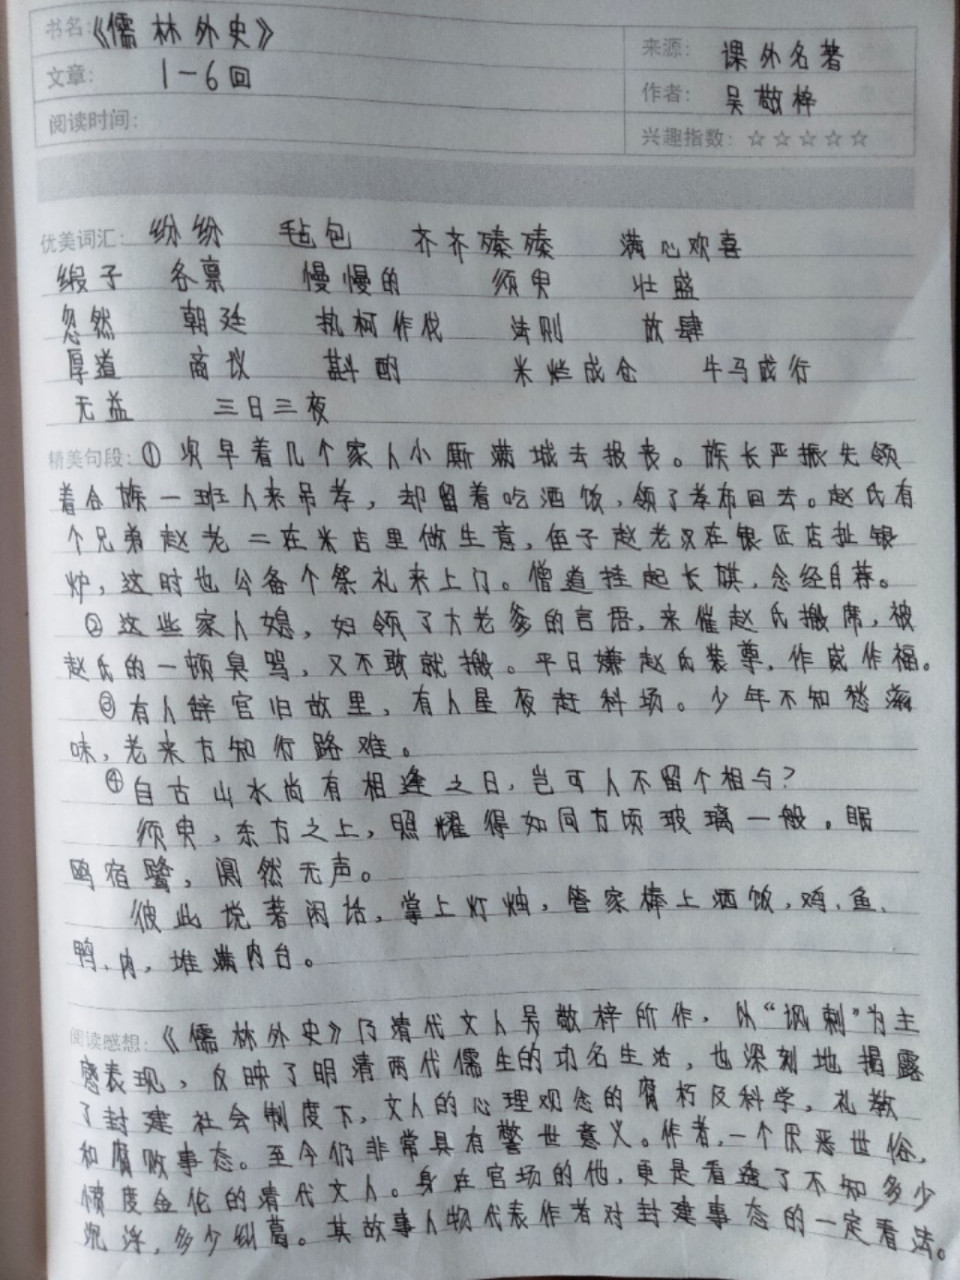 《儒林外史》1~6回读书笔记 《儒林外史》1~6回读书笔记,之前上传发布